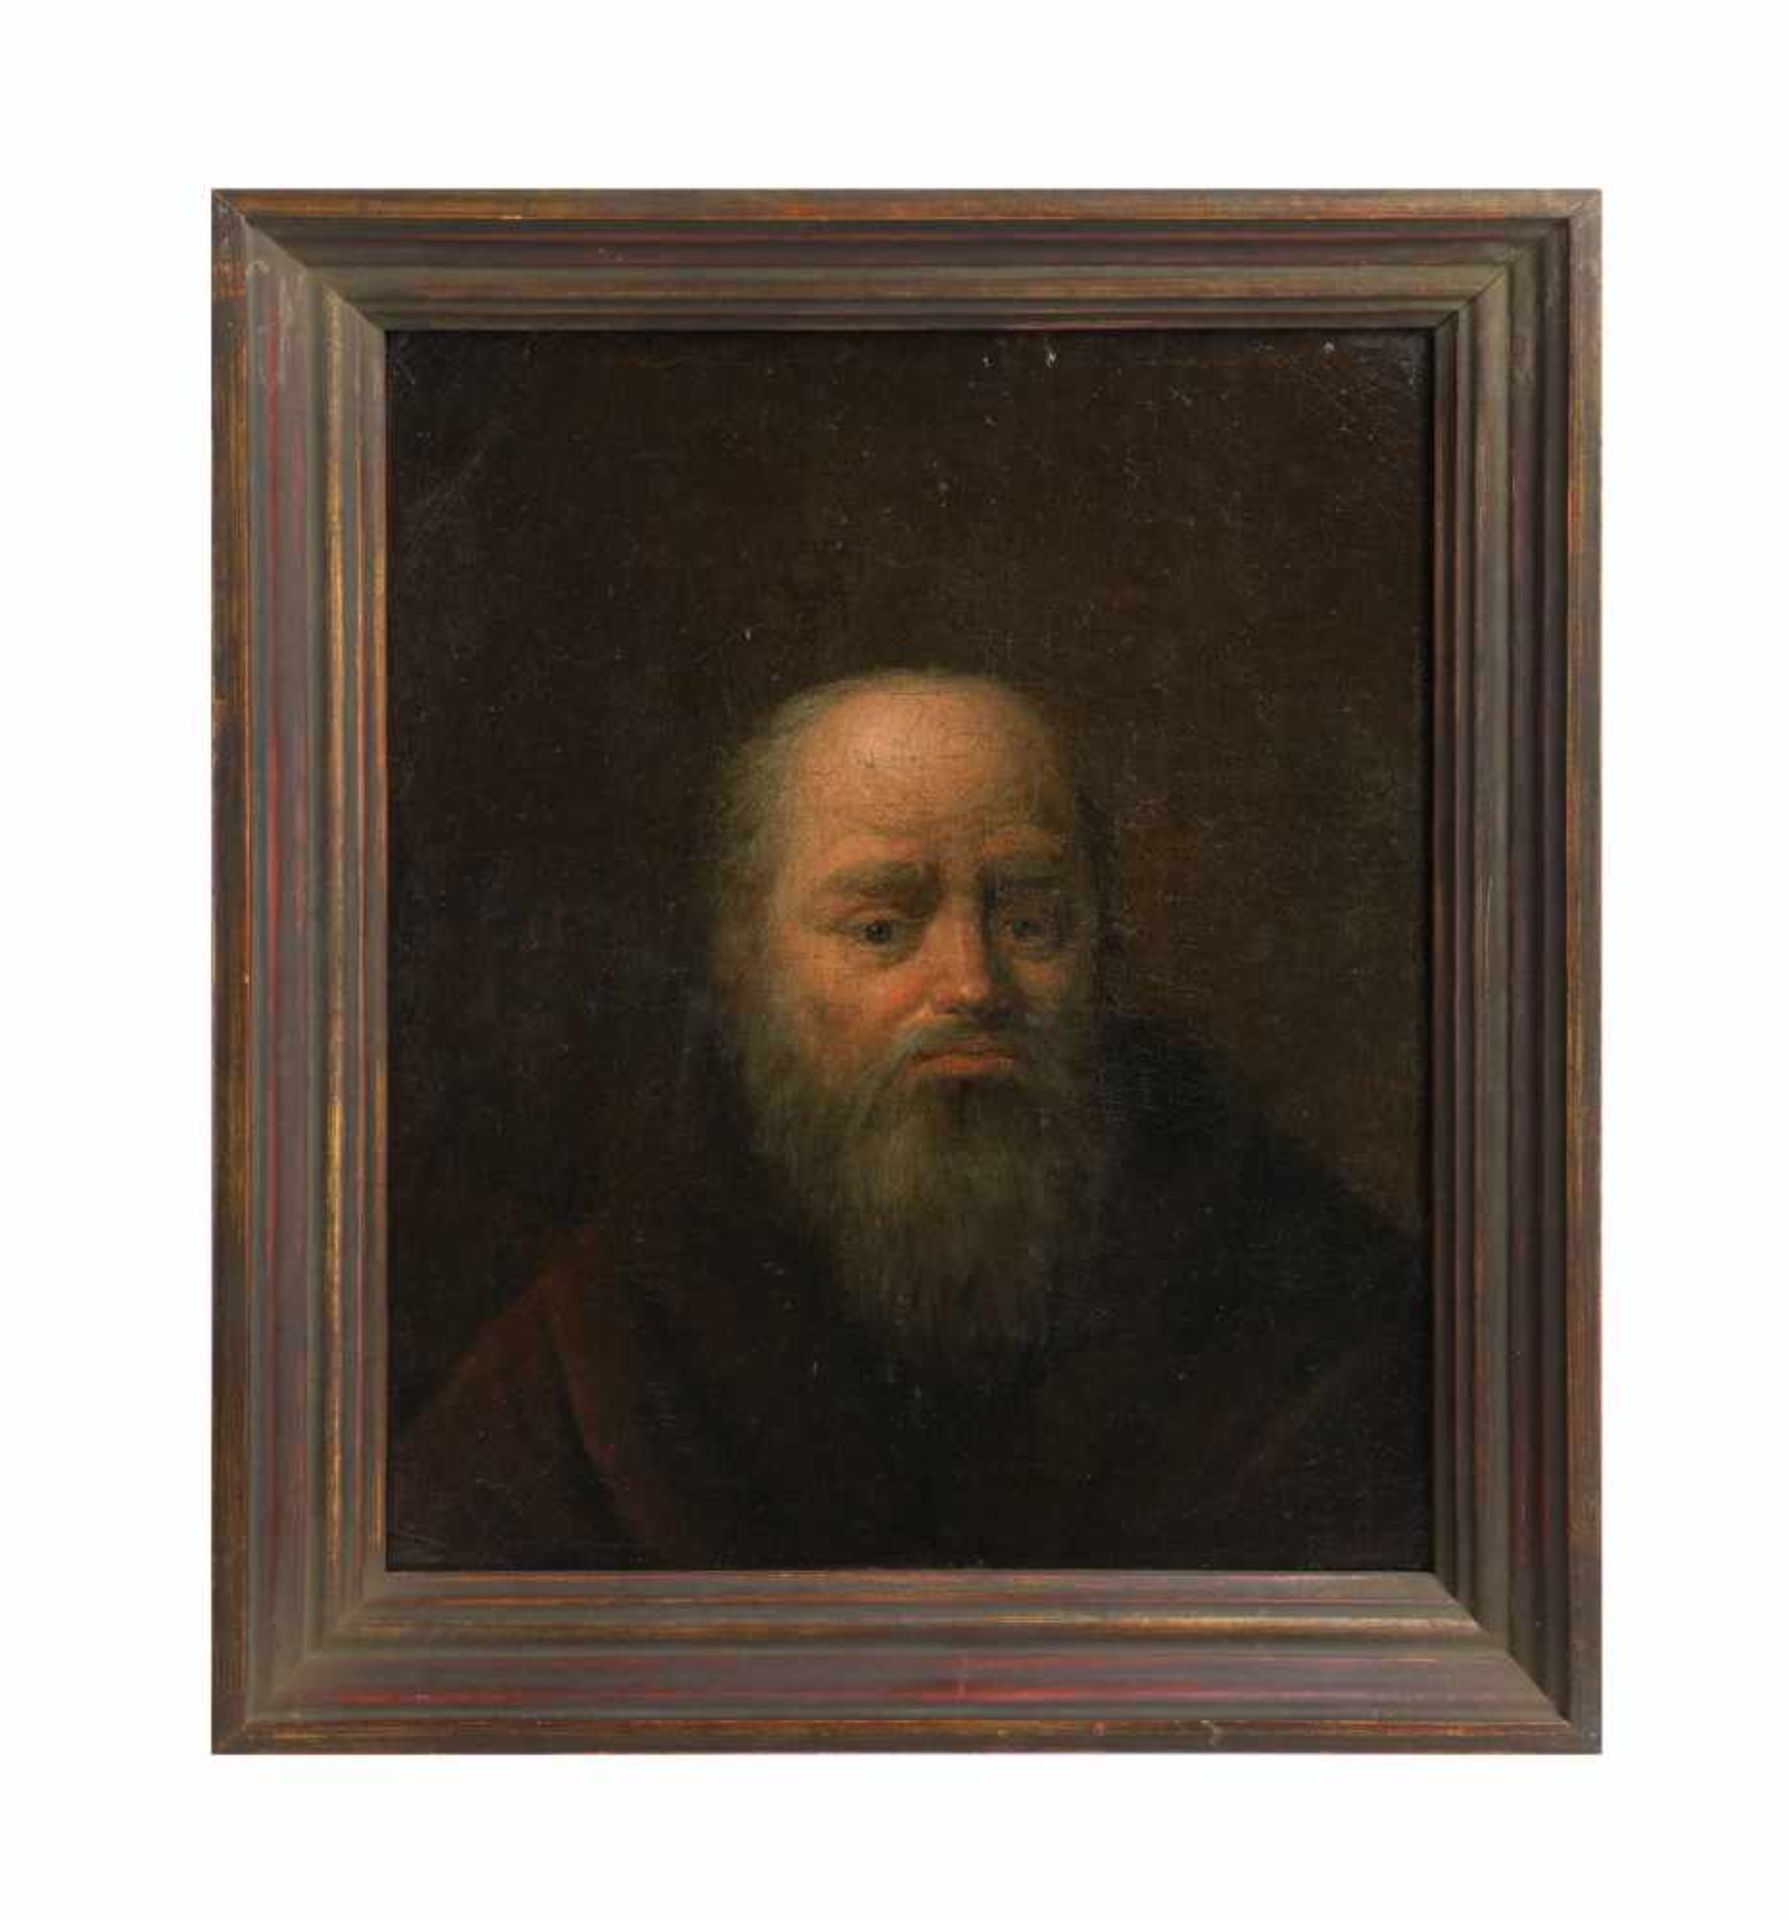 Unbekannter Künstler (19. Jh.) Paar Männerporträts, Öl auf Leinwand, doubliert, je 25 cm x 20 cm, - Image 2 of 2